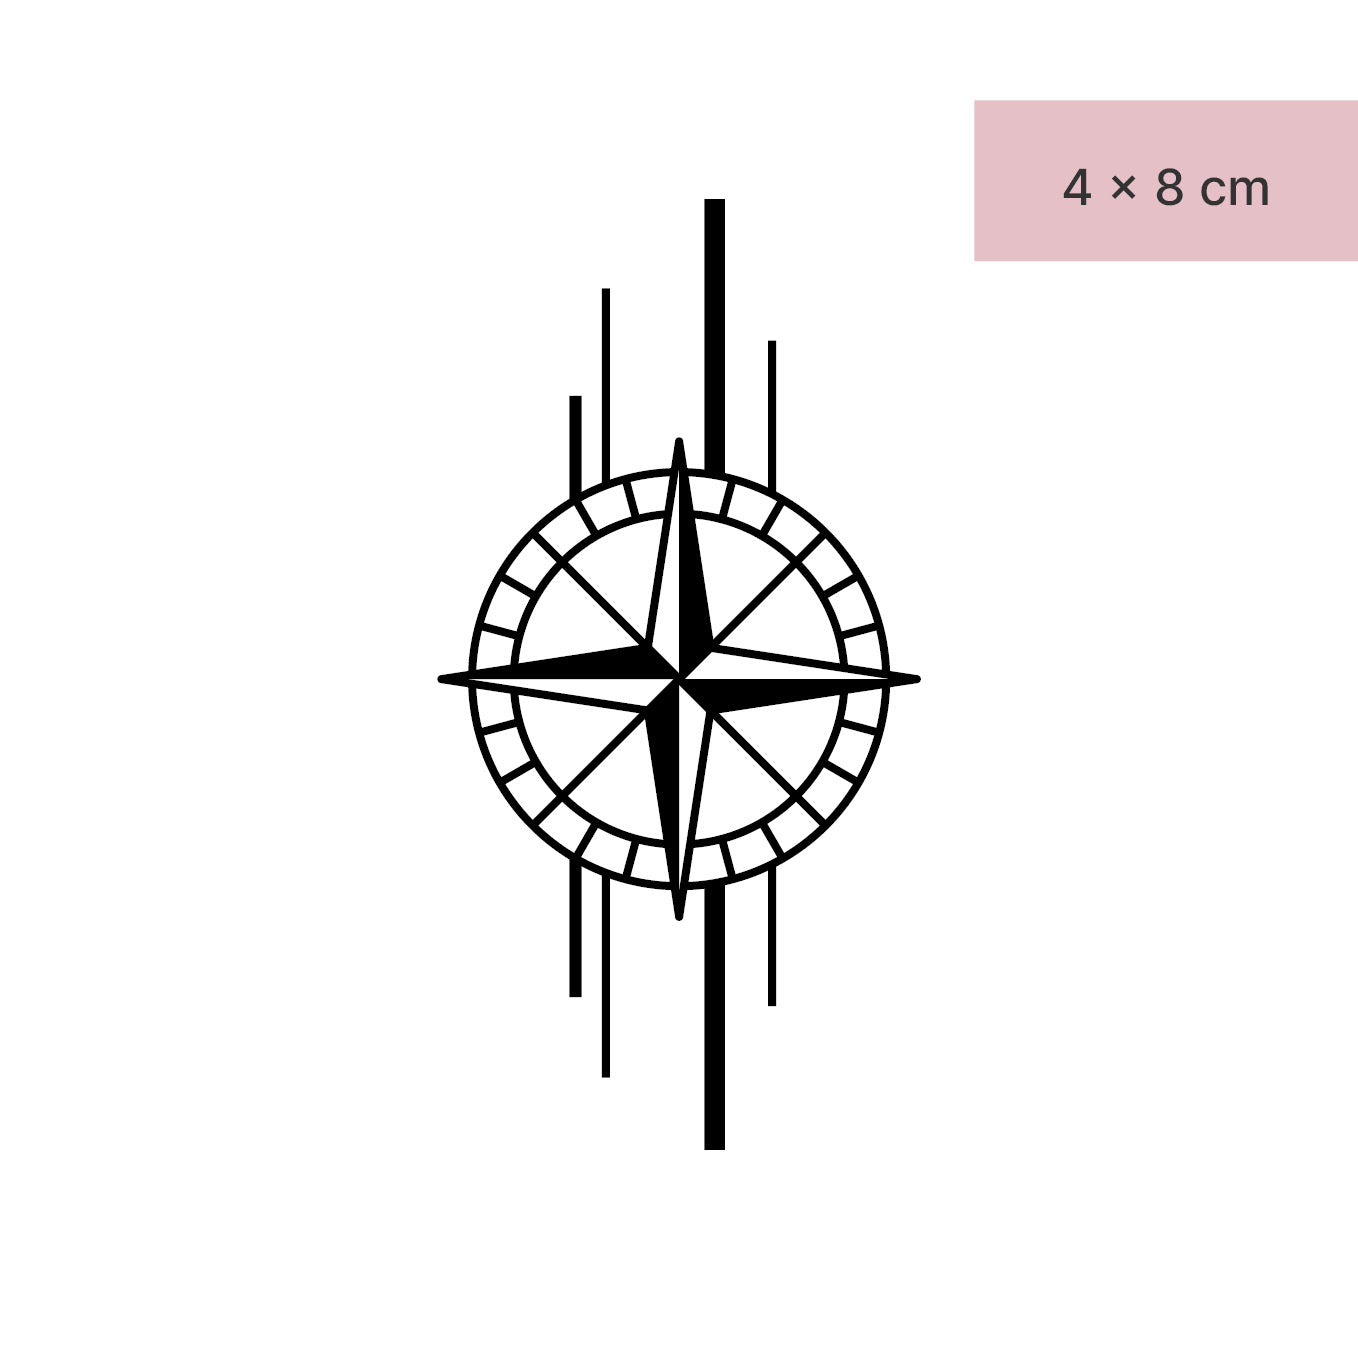 Kompass mit Linien Tattoo von minink, der Marke für temporäre Tattoos.